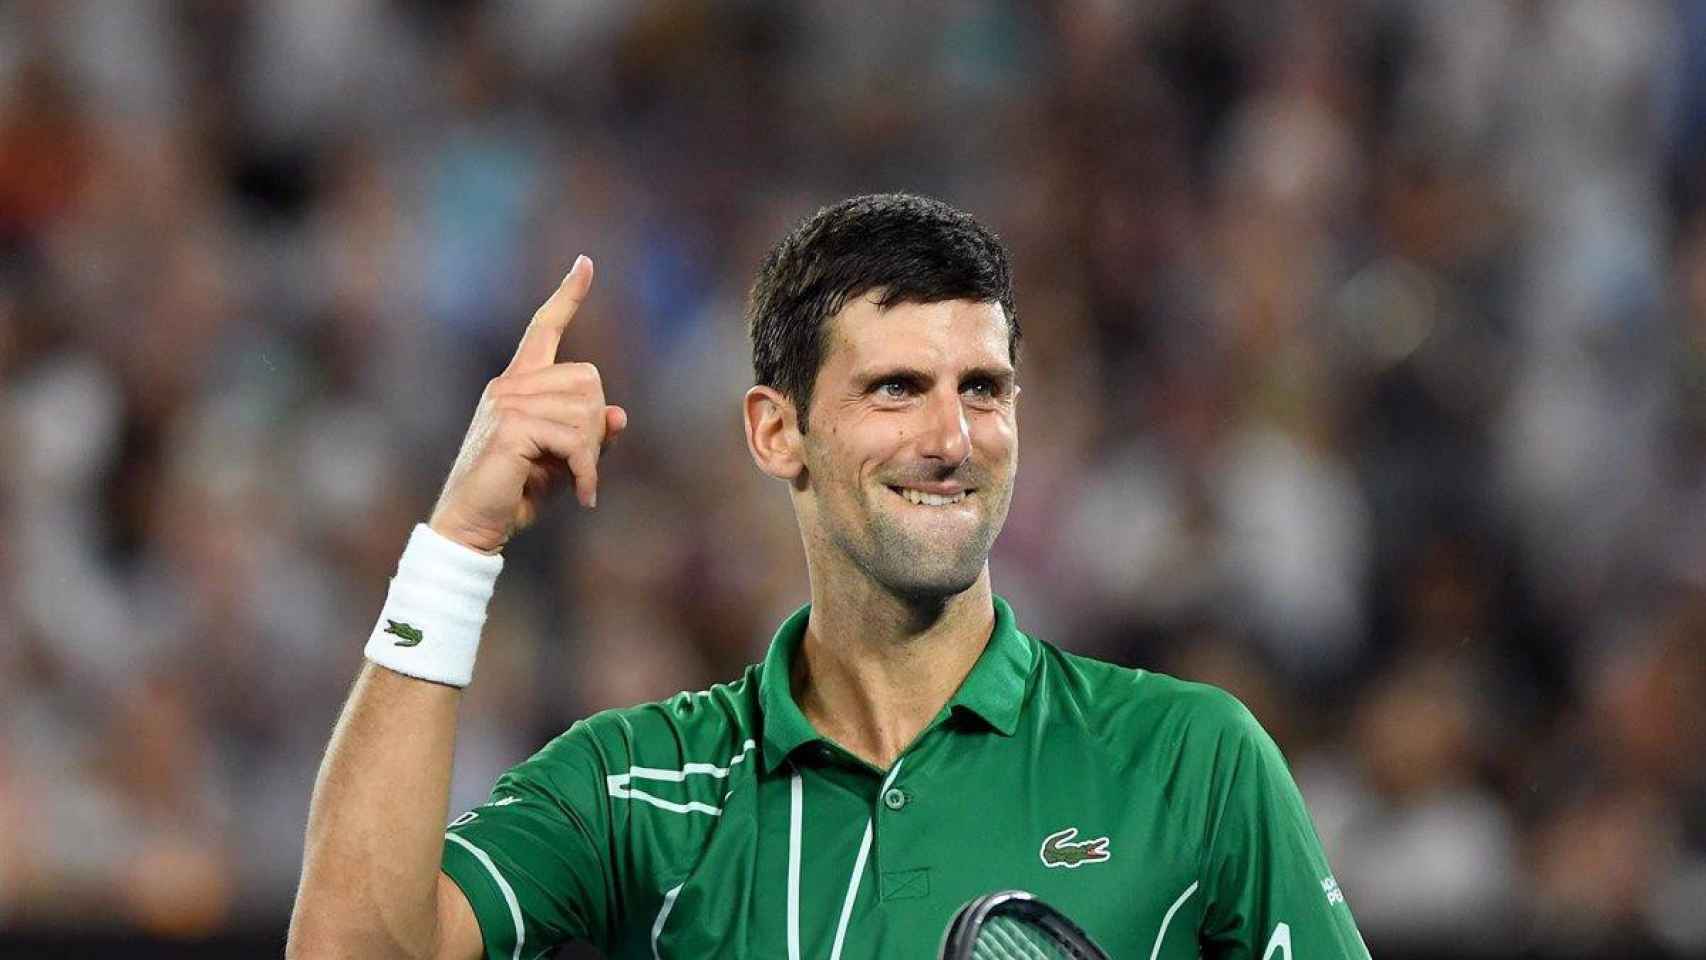 El tenista Novak Djokovic celebra una victoria / EP